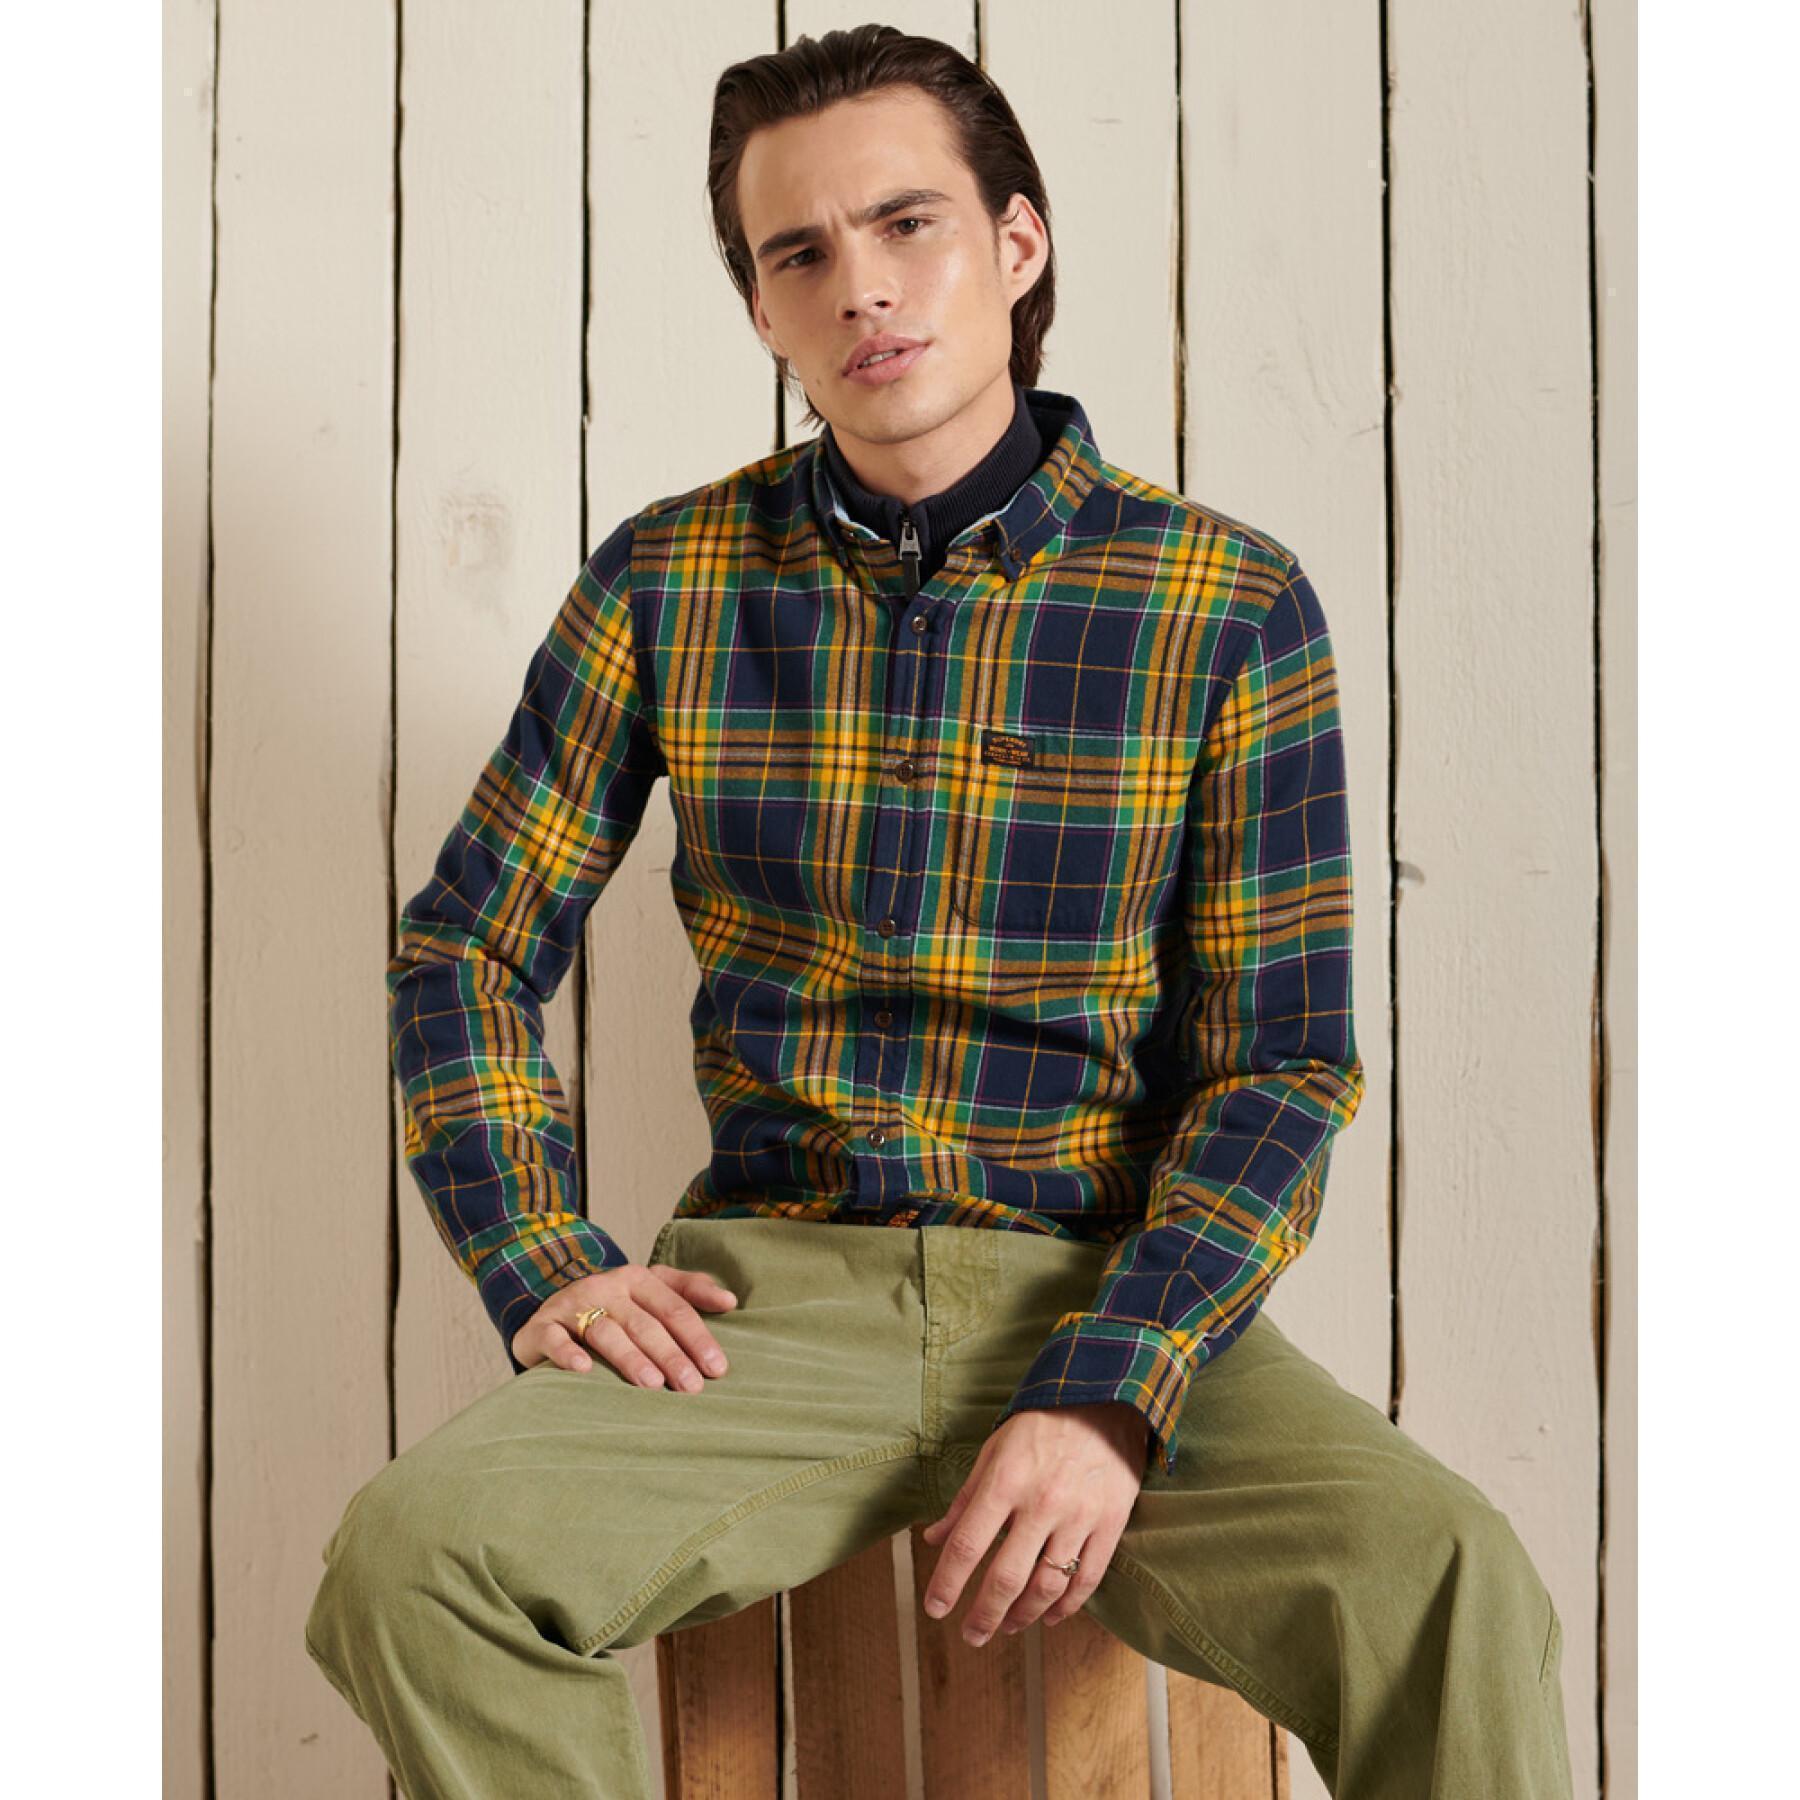 Organic cotton lumberjack shirt Superdry Heritage